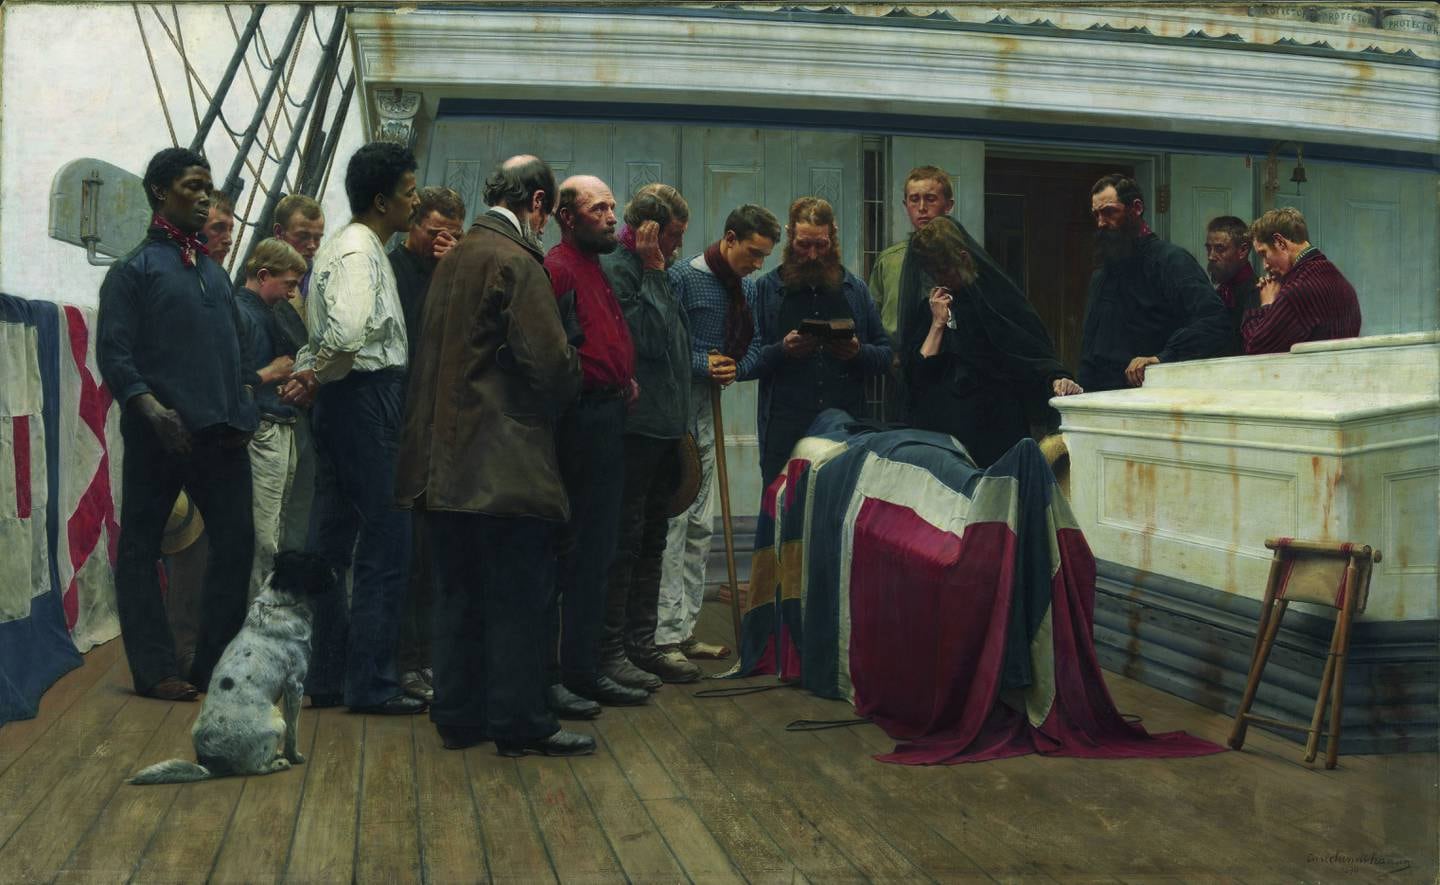 George kom til Norge som sjømann, og han var bare en av mange utenlandske sjøfolk i den norske handelsflåten. Maleren Carl Fredrik Sundt-Hansen illustrerte dette med maleriet “En begravelse ombord” i 1890.